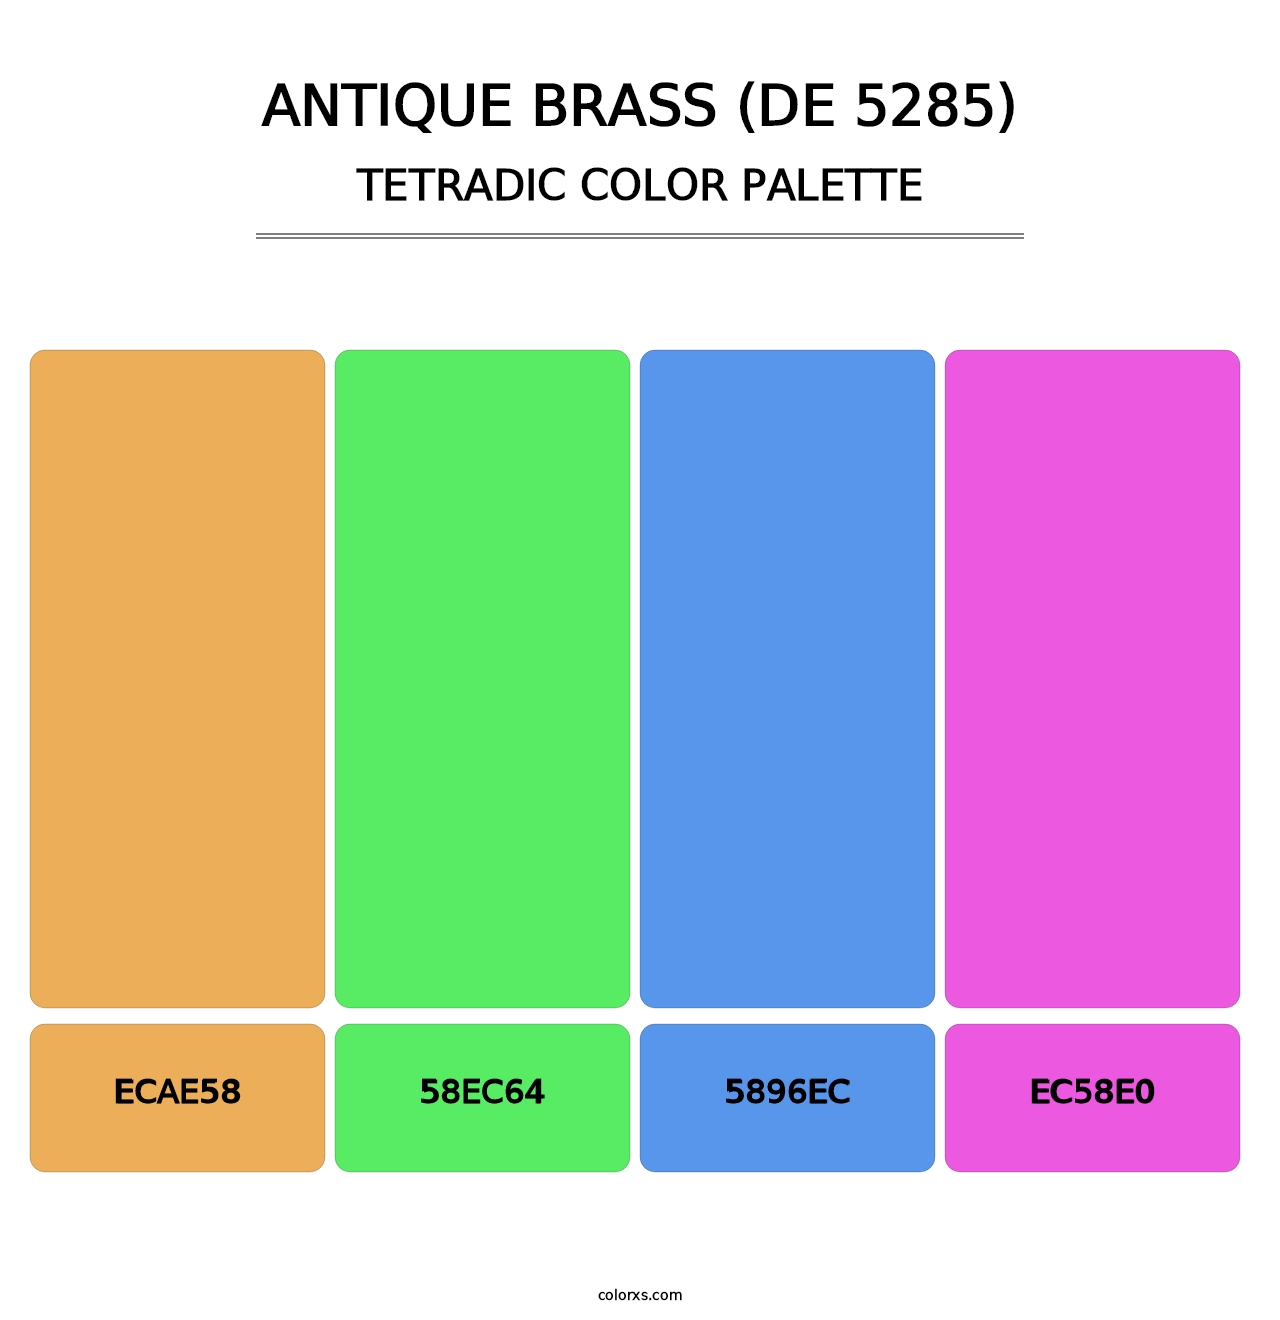 Antique Brass (DE 5285) - Tetradic Color Palette